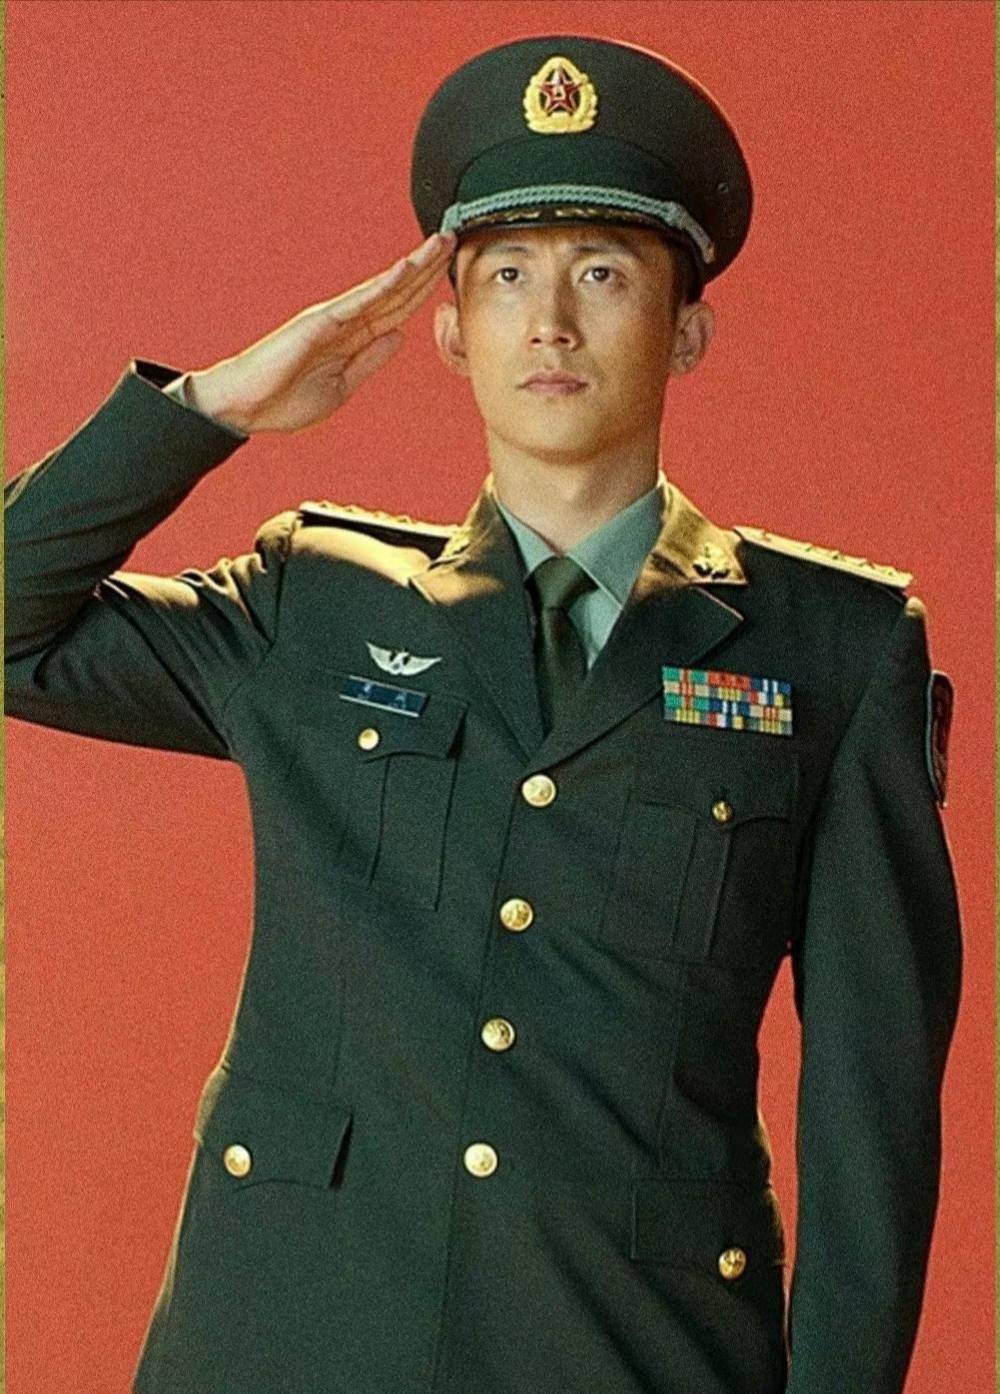 而作为一个在娱乐圈中"服兵役"的男人,黄景瑜拍摄的军旅题材电影电视